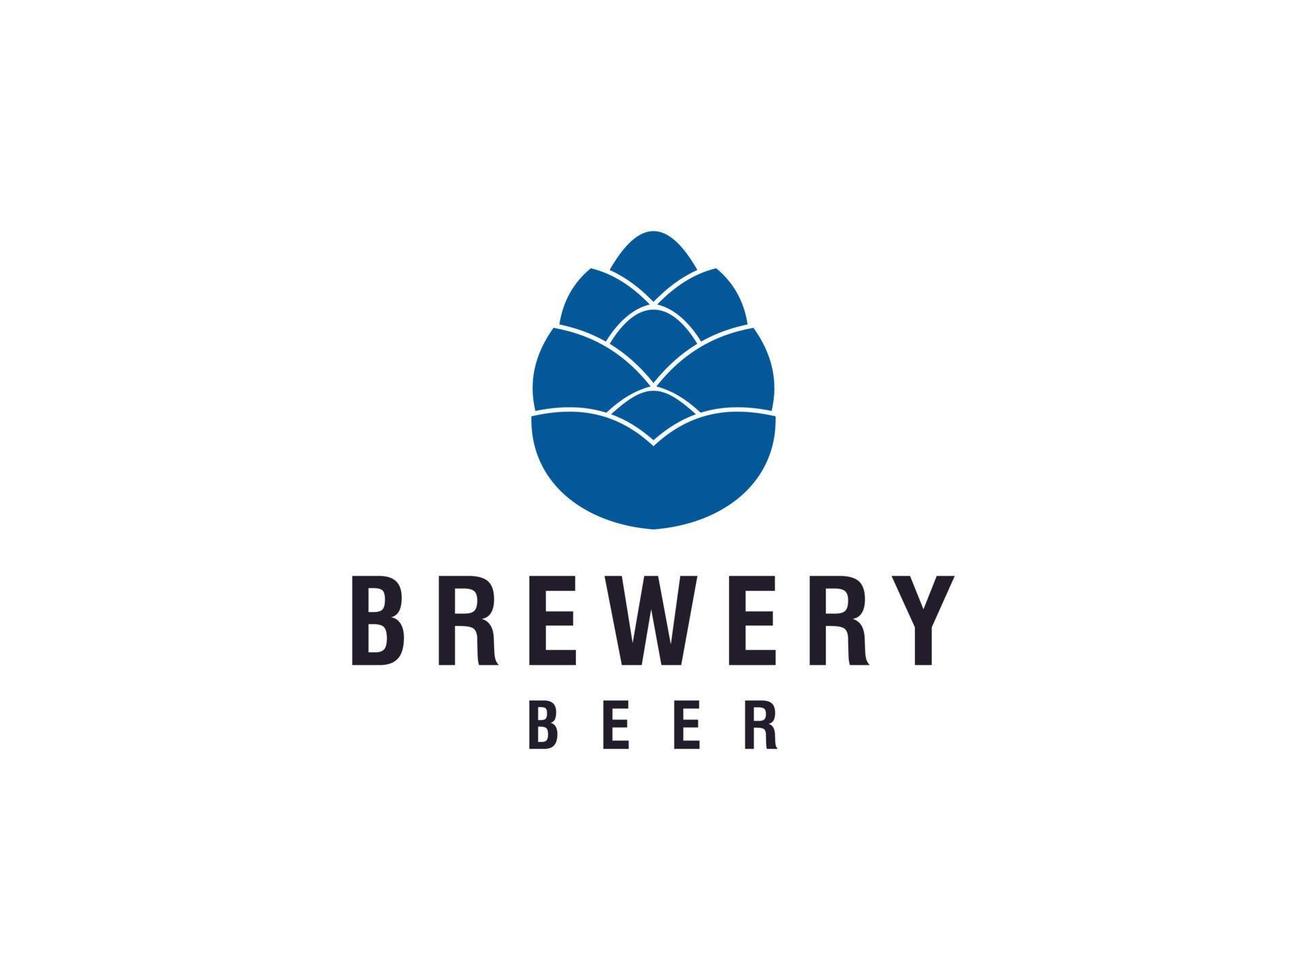 cervecería, diseño de logotipo de elaboración de cerveza de malta de trigo. utilizable para logotipos comerciales y de marca. elemento de plantilla de diseño de logotipo de vector plano.